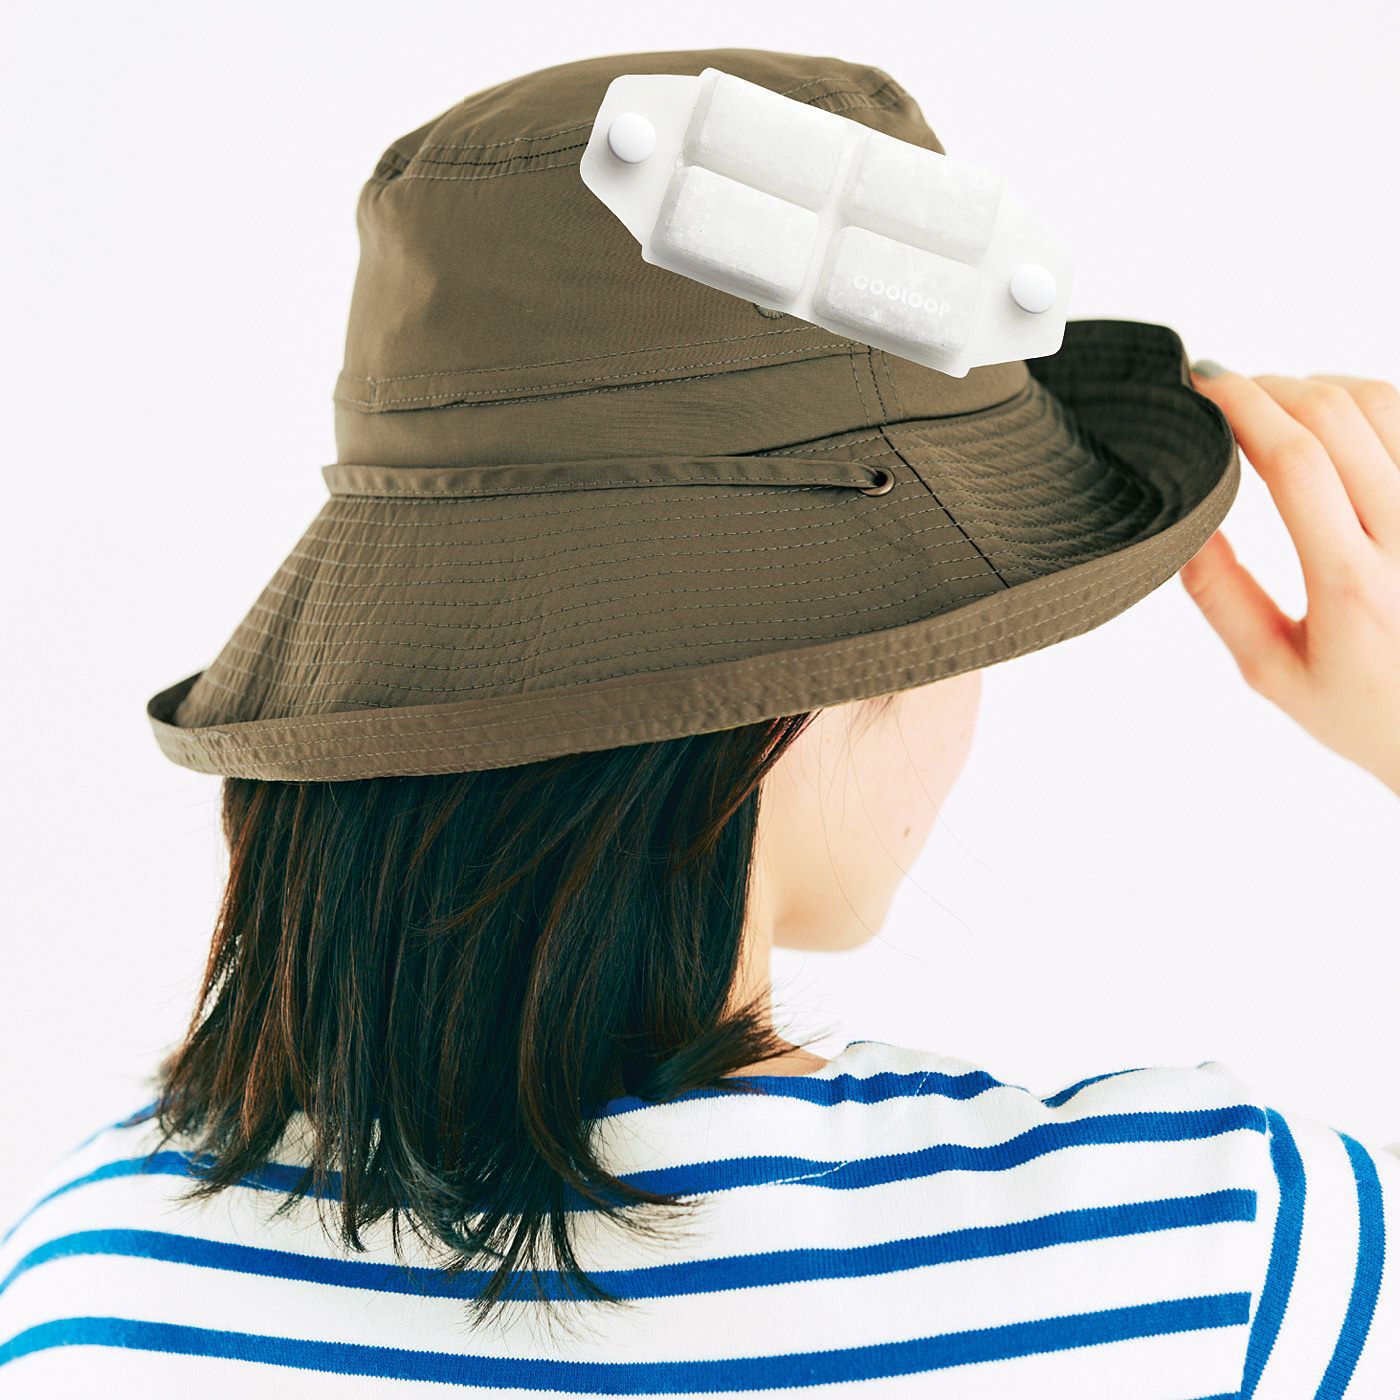 L'AMIPLUS|ラミプリュス　帽子に取り付けてひんやり　暑い日も快適COOLOOPパッド|撥水＆UVハット（326892、379127）に取り付けて使用する専用の商品です。